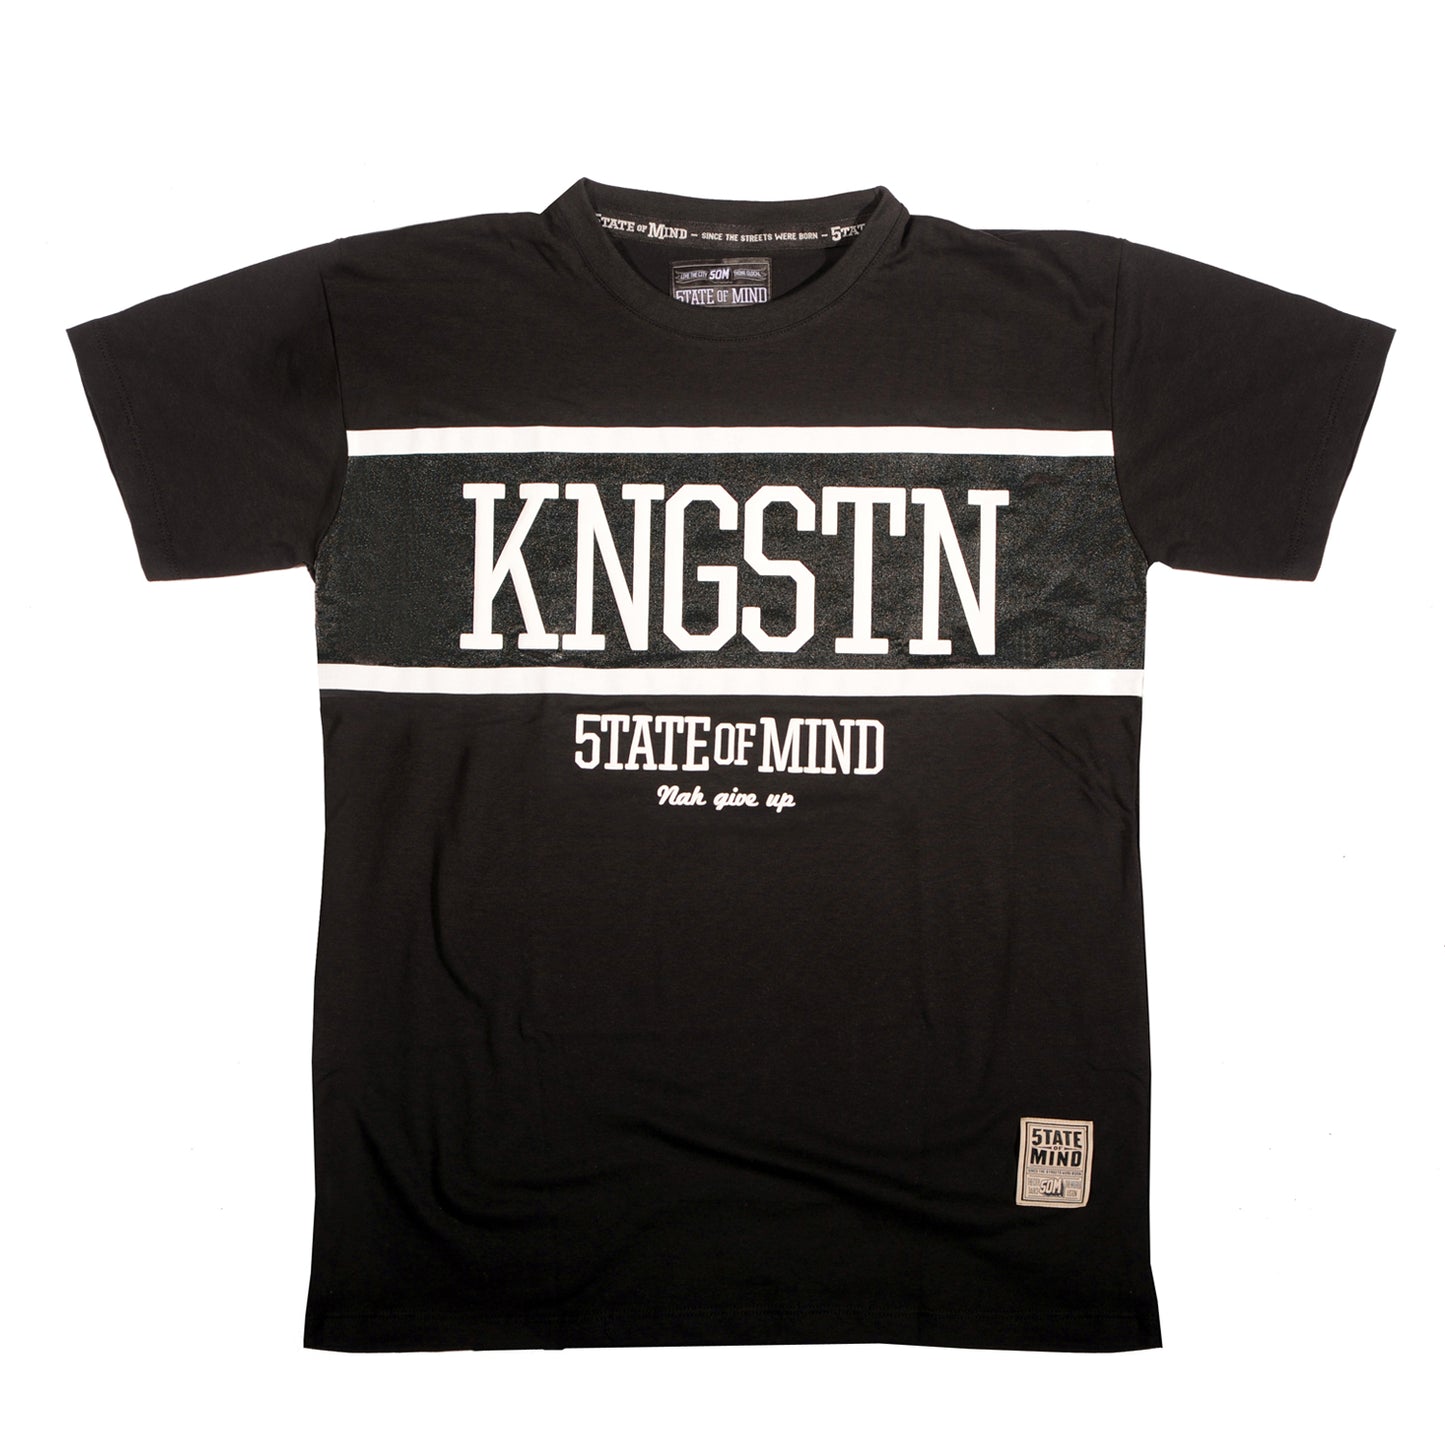 "KNGSTN 5OM" black t-shirt